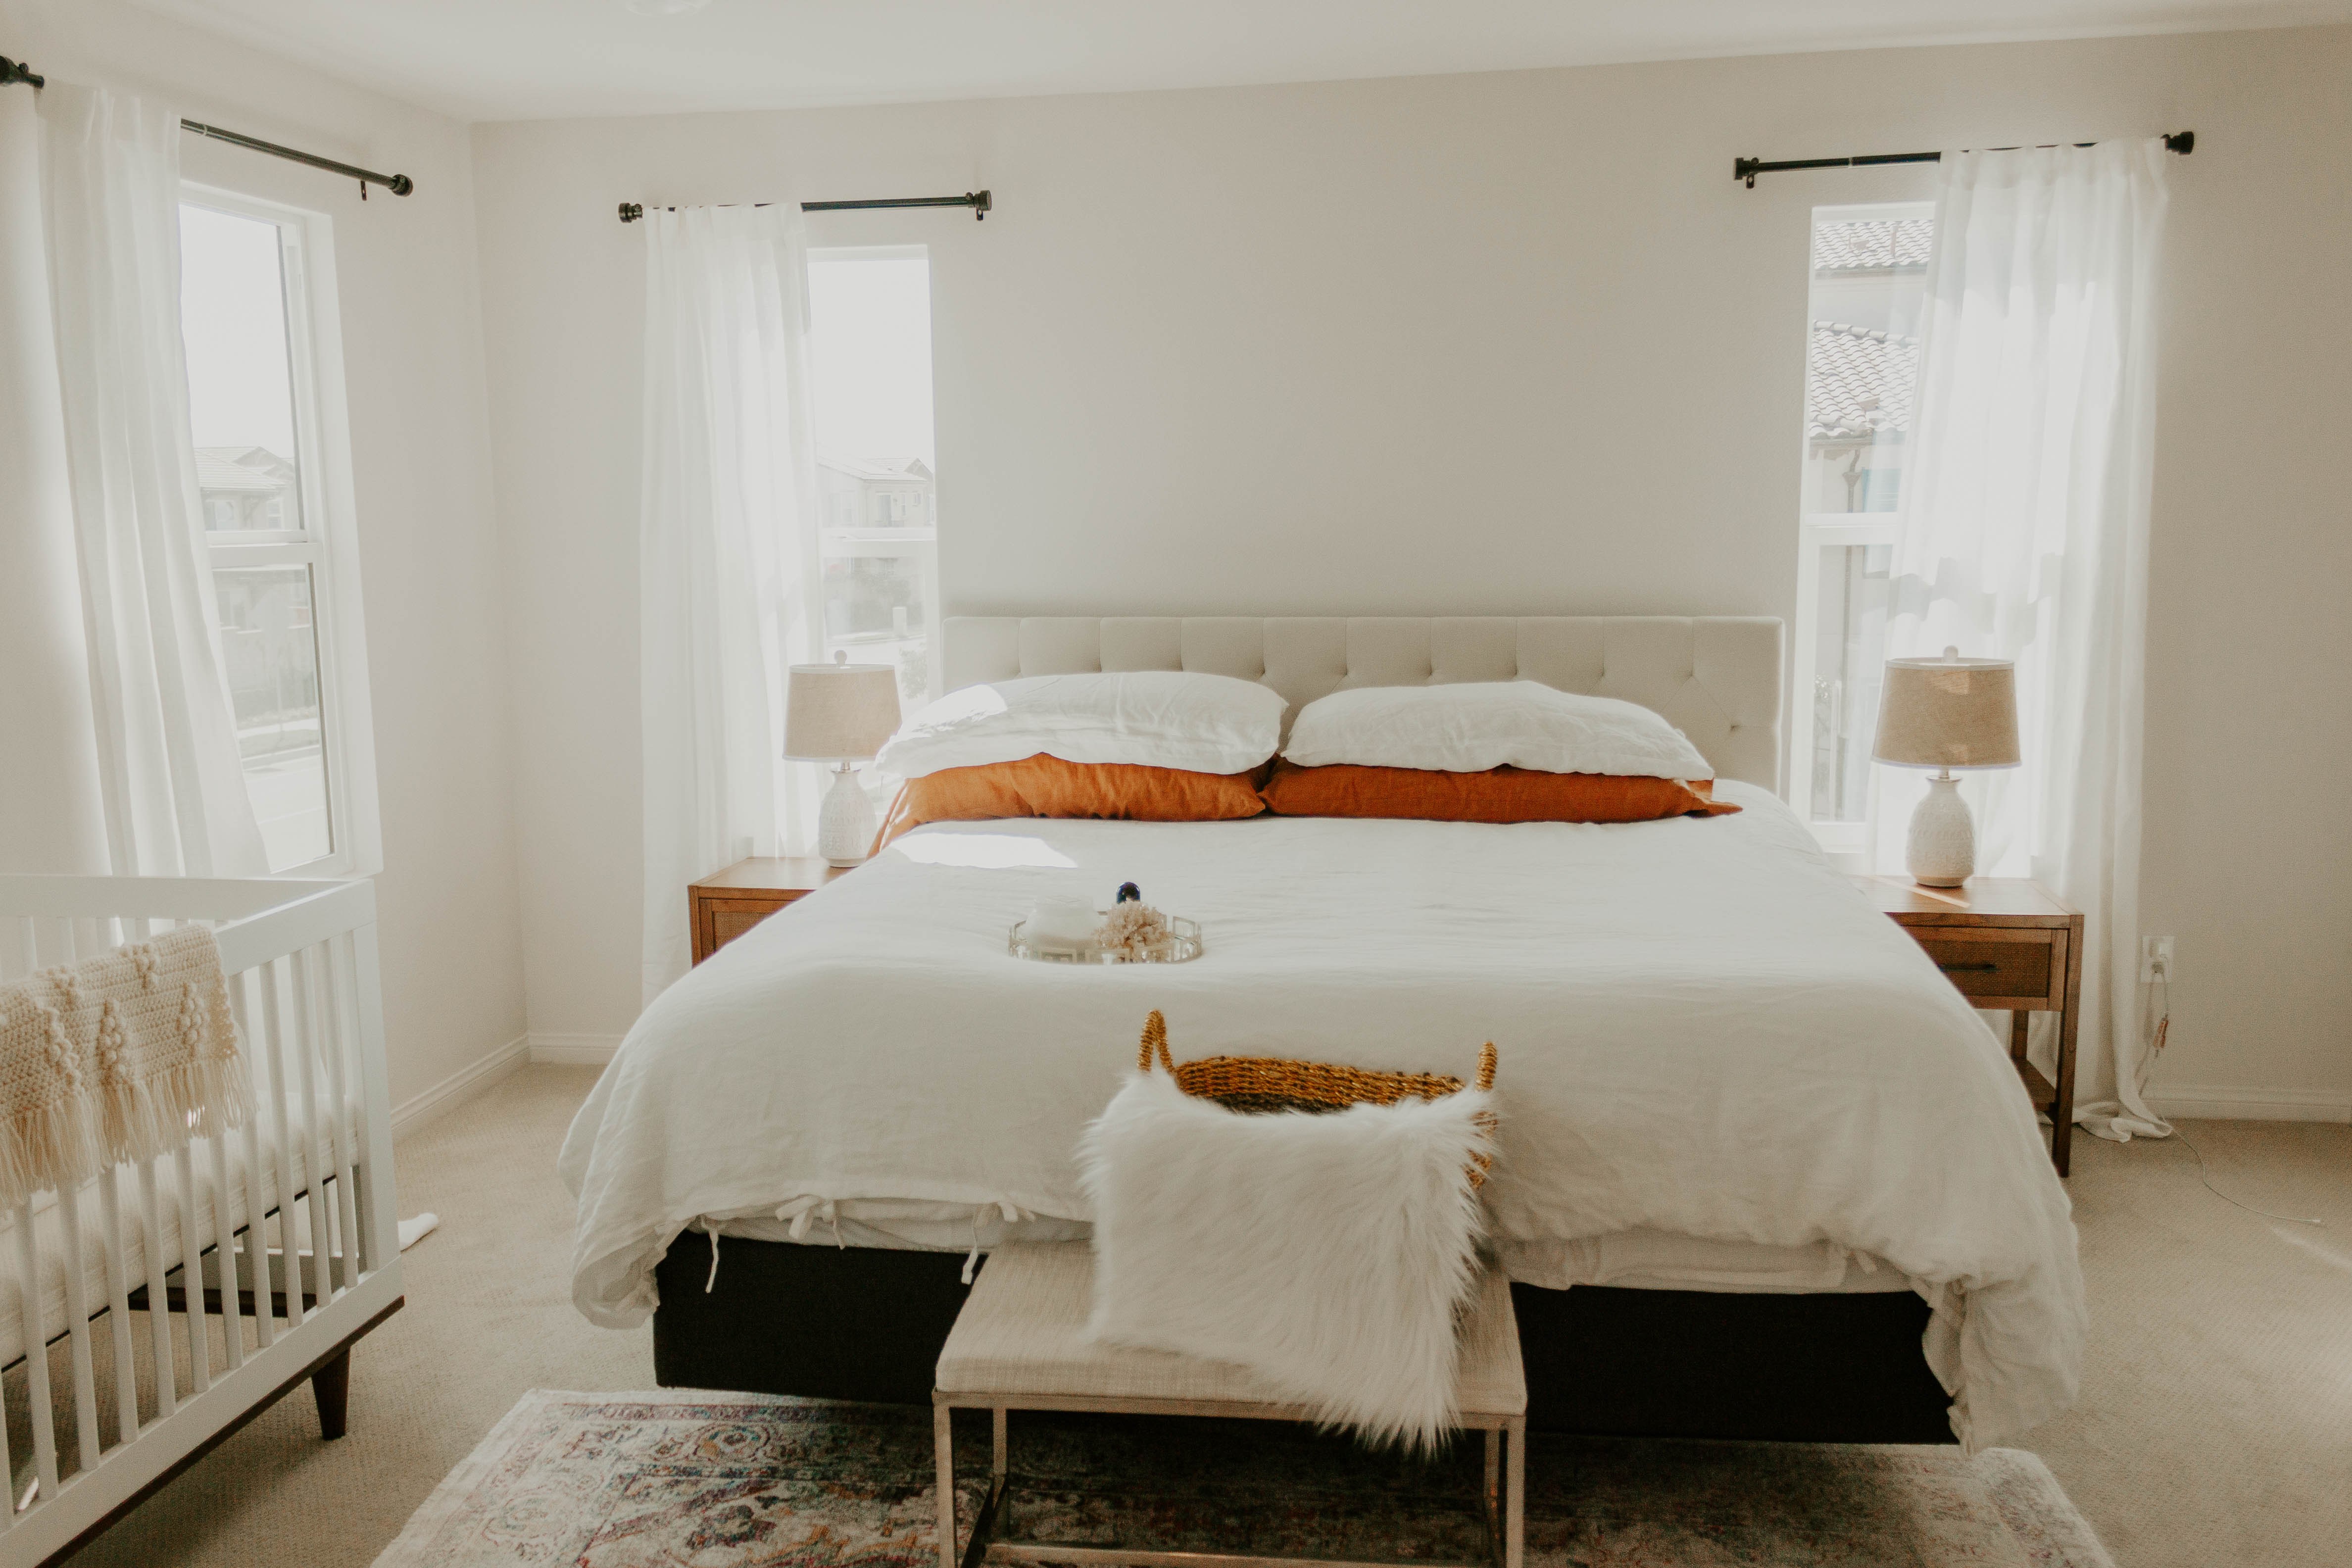 linen bedding photo by @allie.zundel